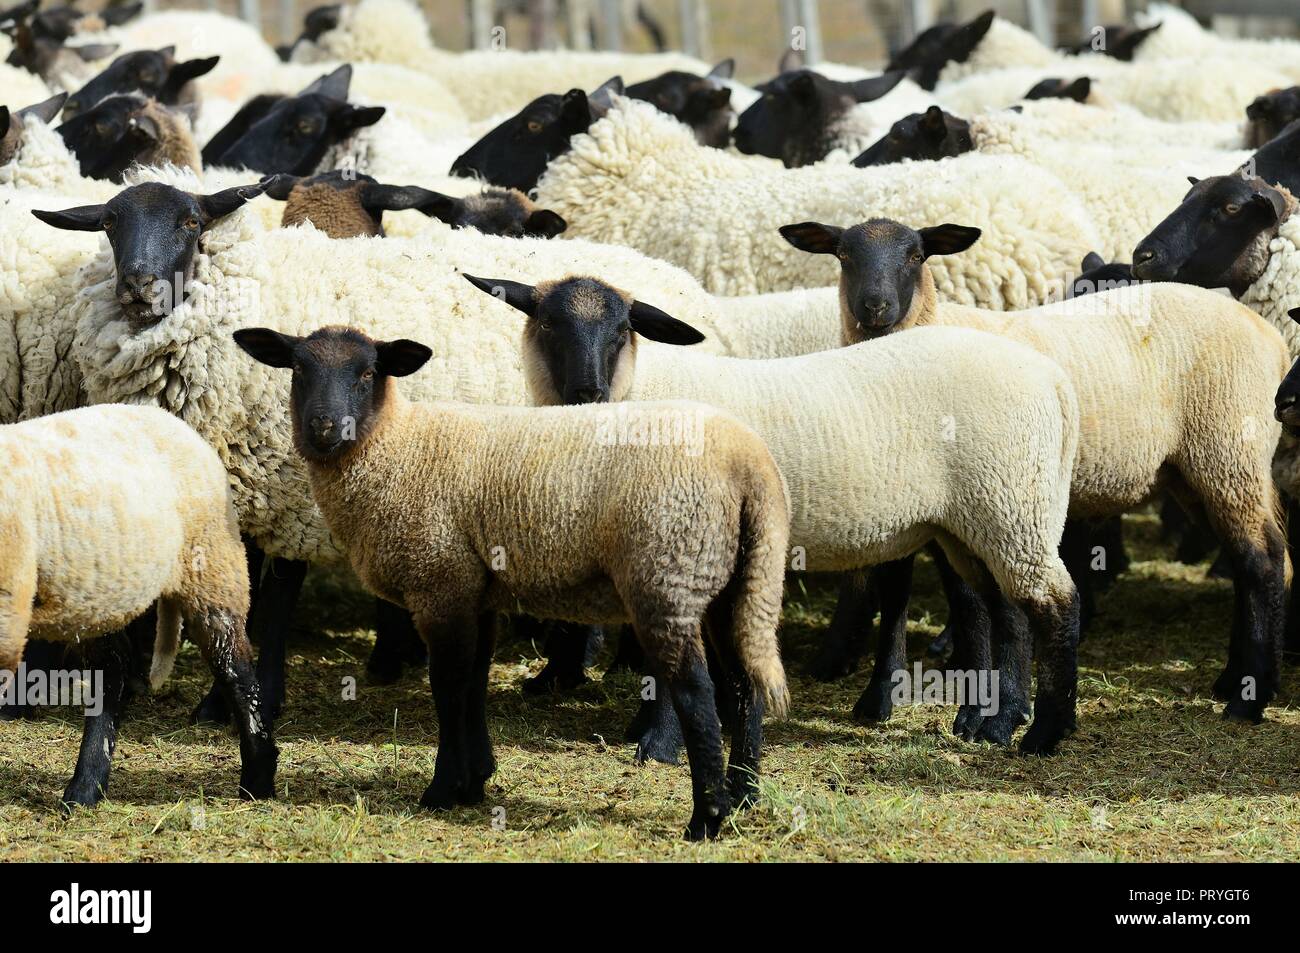 Blackhead sheep, flock of sheep in the pen, Tierra del Fuego province, Tierra del Fuego, Chile Stock Photo